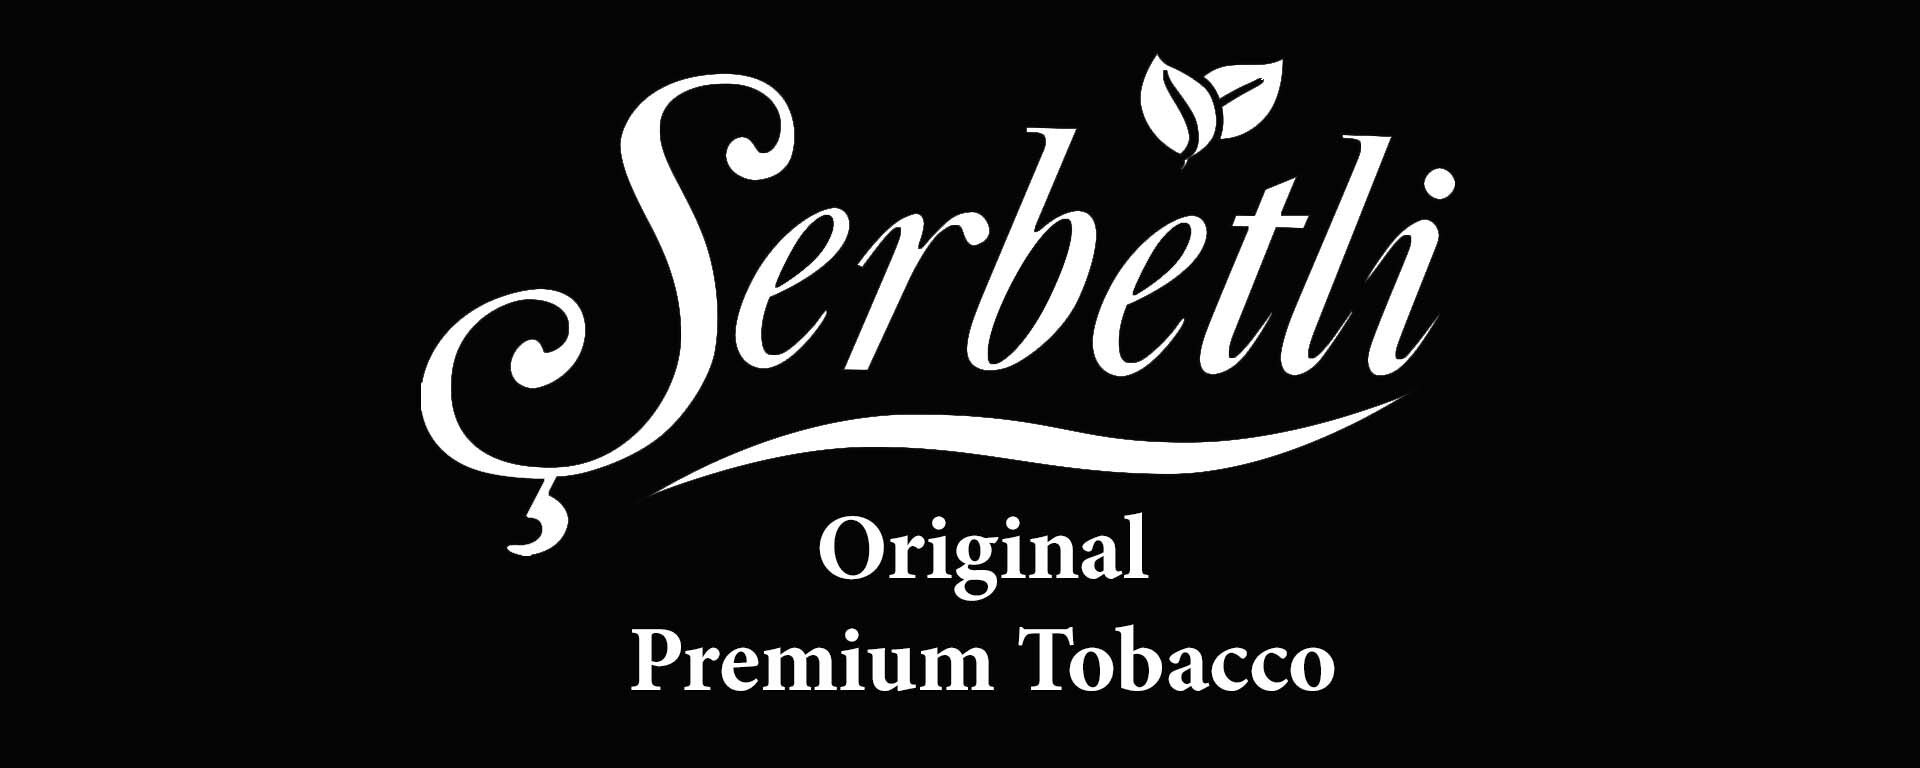 Тютюн Serbetli Original Premium Tobacco